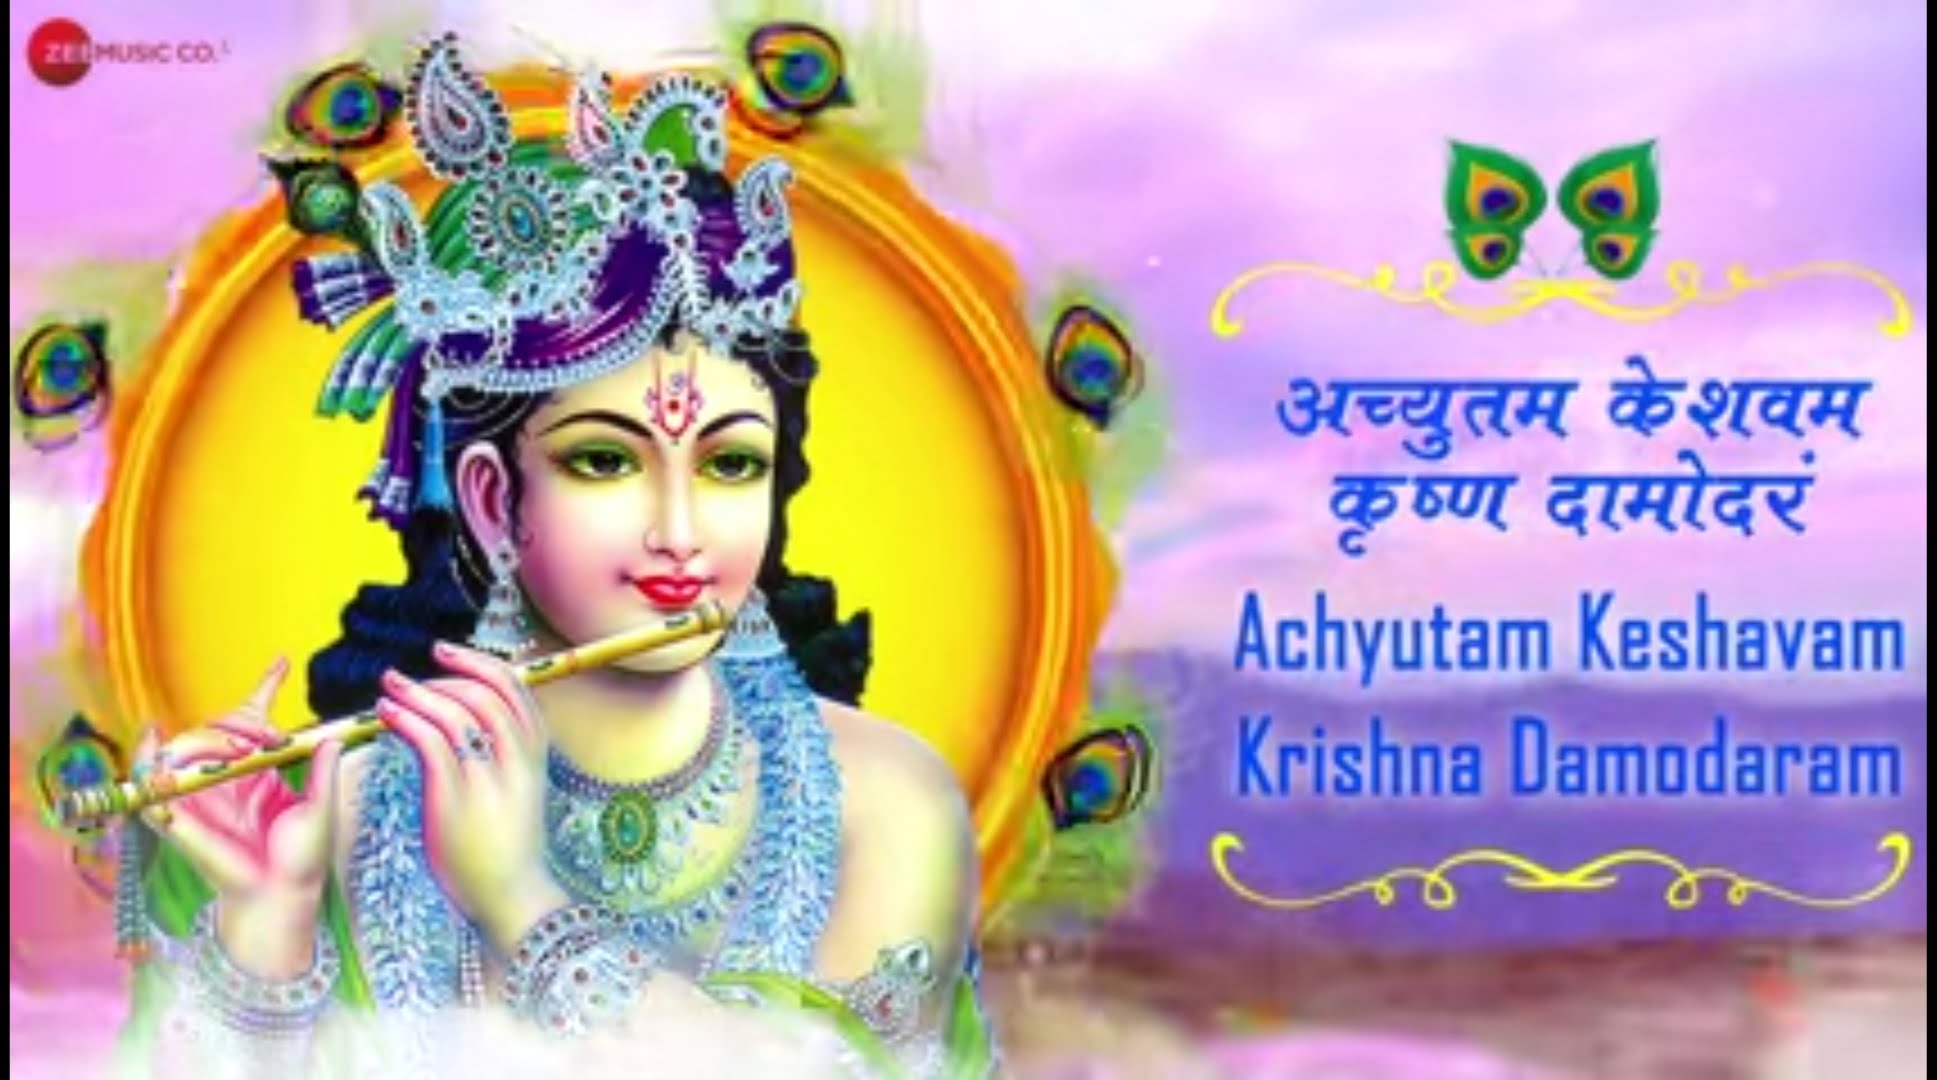 अच्युतम केशवम लिरिक्स, Achyutam keshwam bhajan lyrics